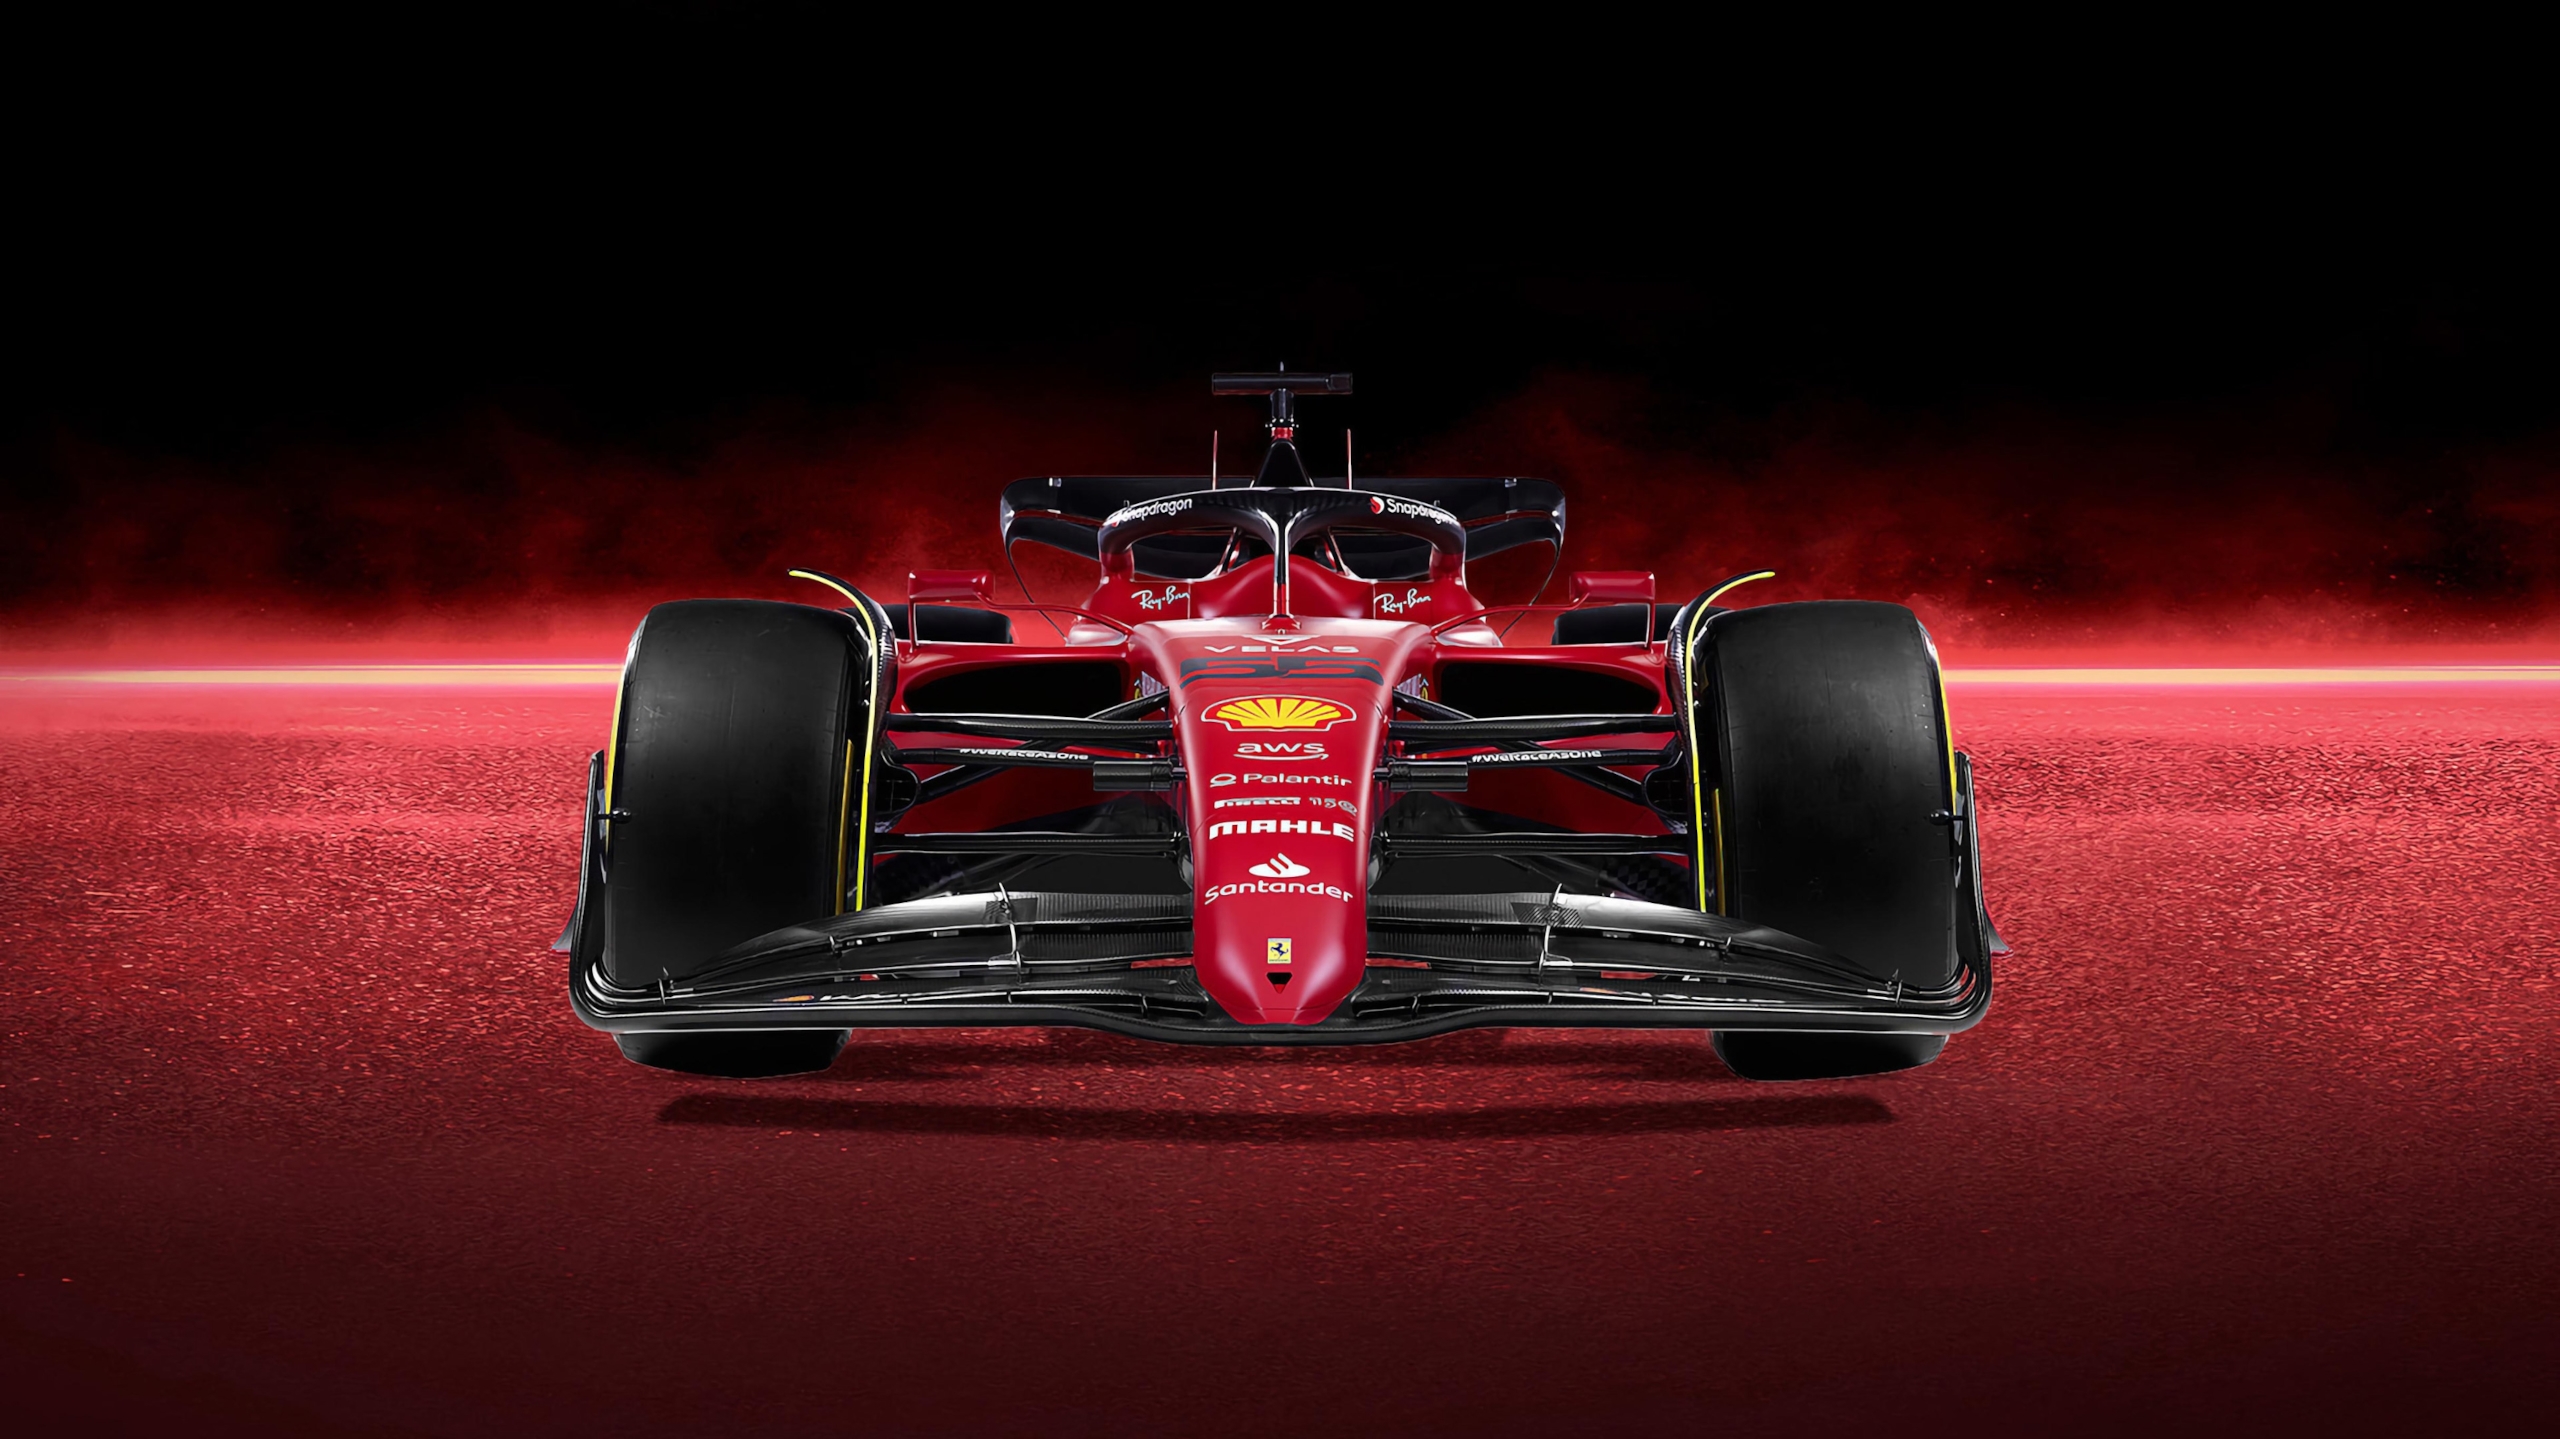 Ferrari F1 75 ultra HD wallpaper 2560x1439